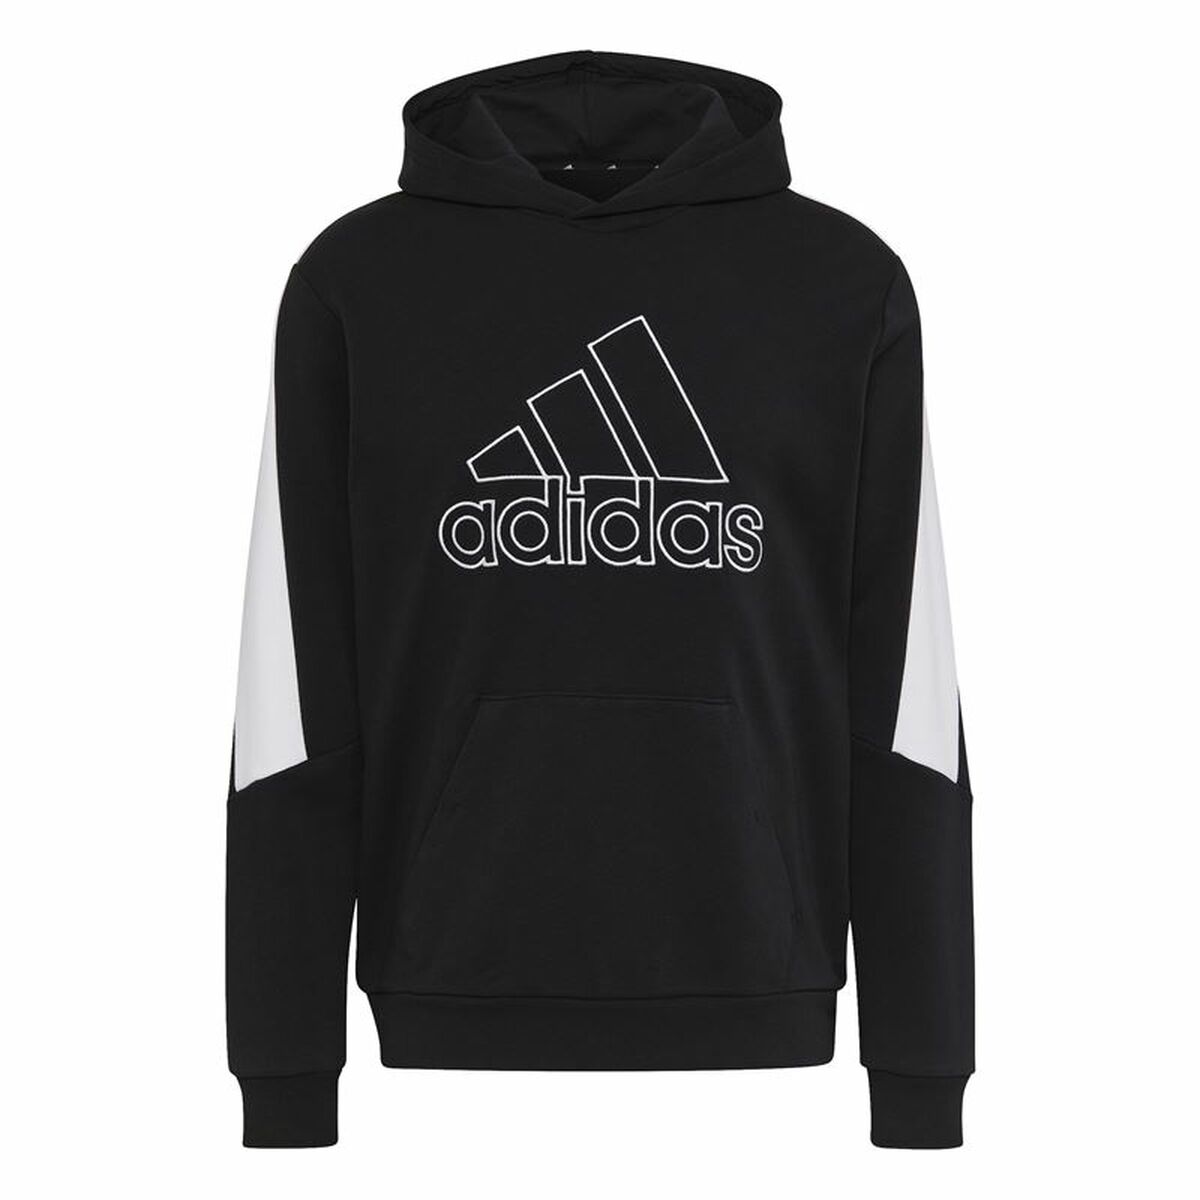 Osta tuote Miesten huppari Adidas Future Icons Musta (Koko: L) verkkokaupastamme Korhone: Urheilu & Vapaa-aika 20% alennuksella koodilla VIIKONLOPPU